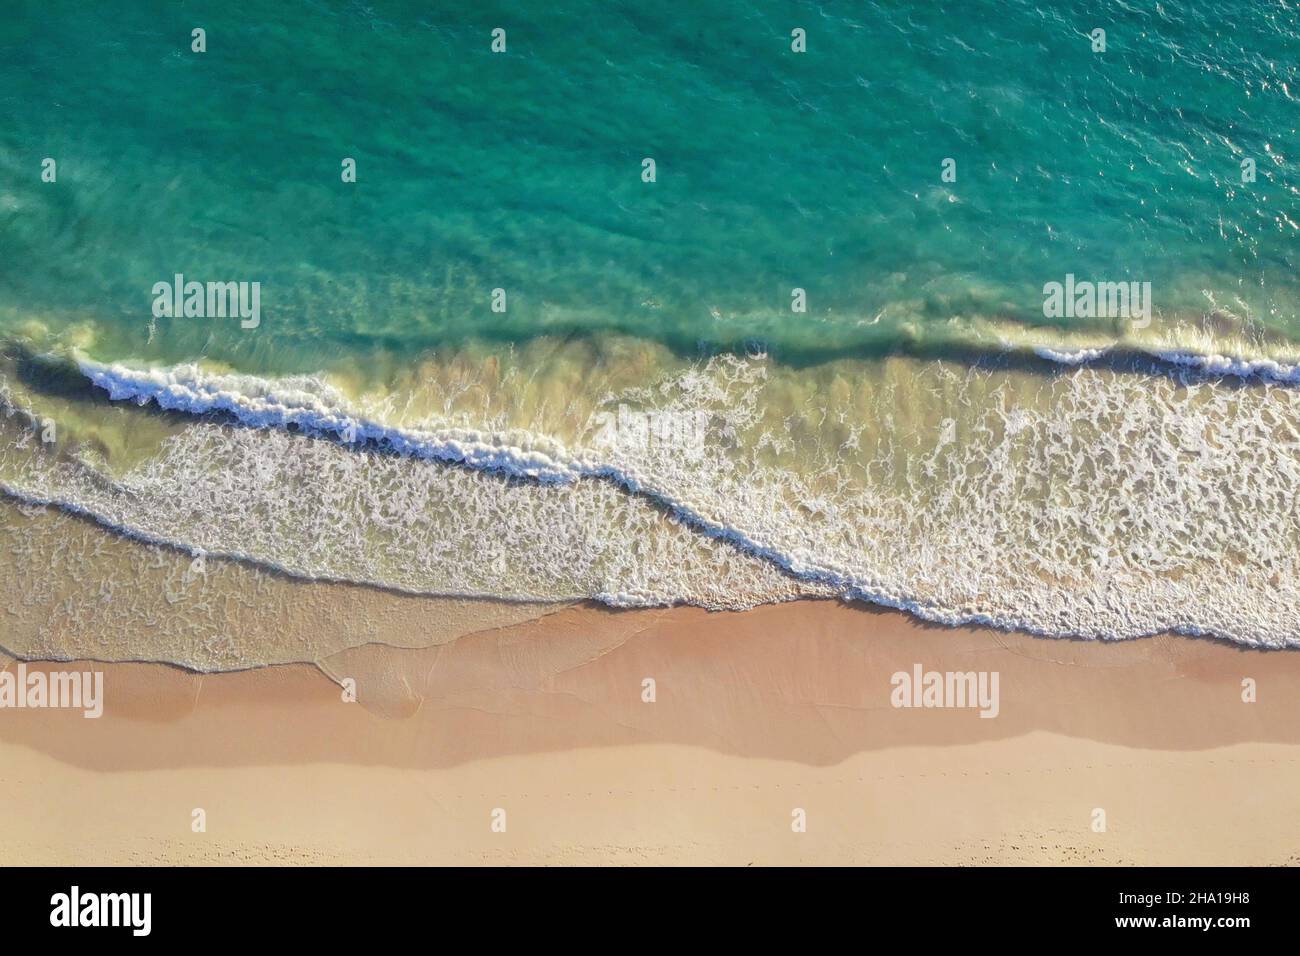 VISTA SUPERIOR. Relajante escena aérea en la playa, plantilla de vacaciones de verano. Olas surfear con increíble laguna azul del océano, costa del mar, costa. Perfecta vista aérea desde la cima del drone. Tranquila y luminosa playa, junto al mar Foto de stock